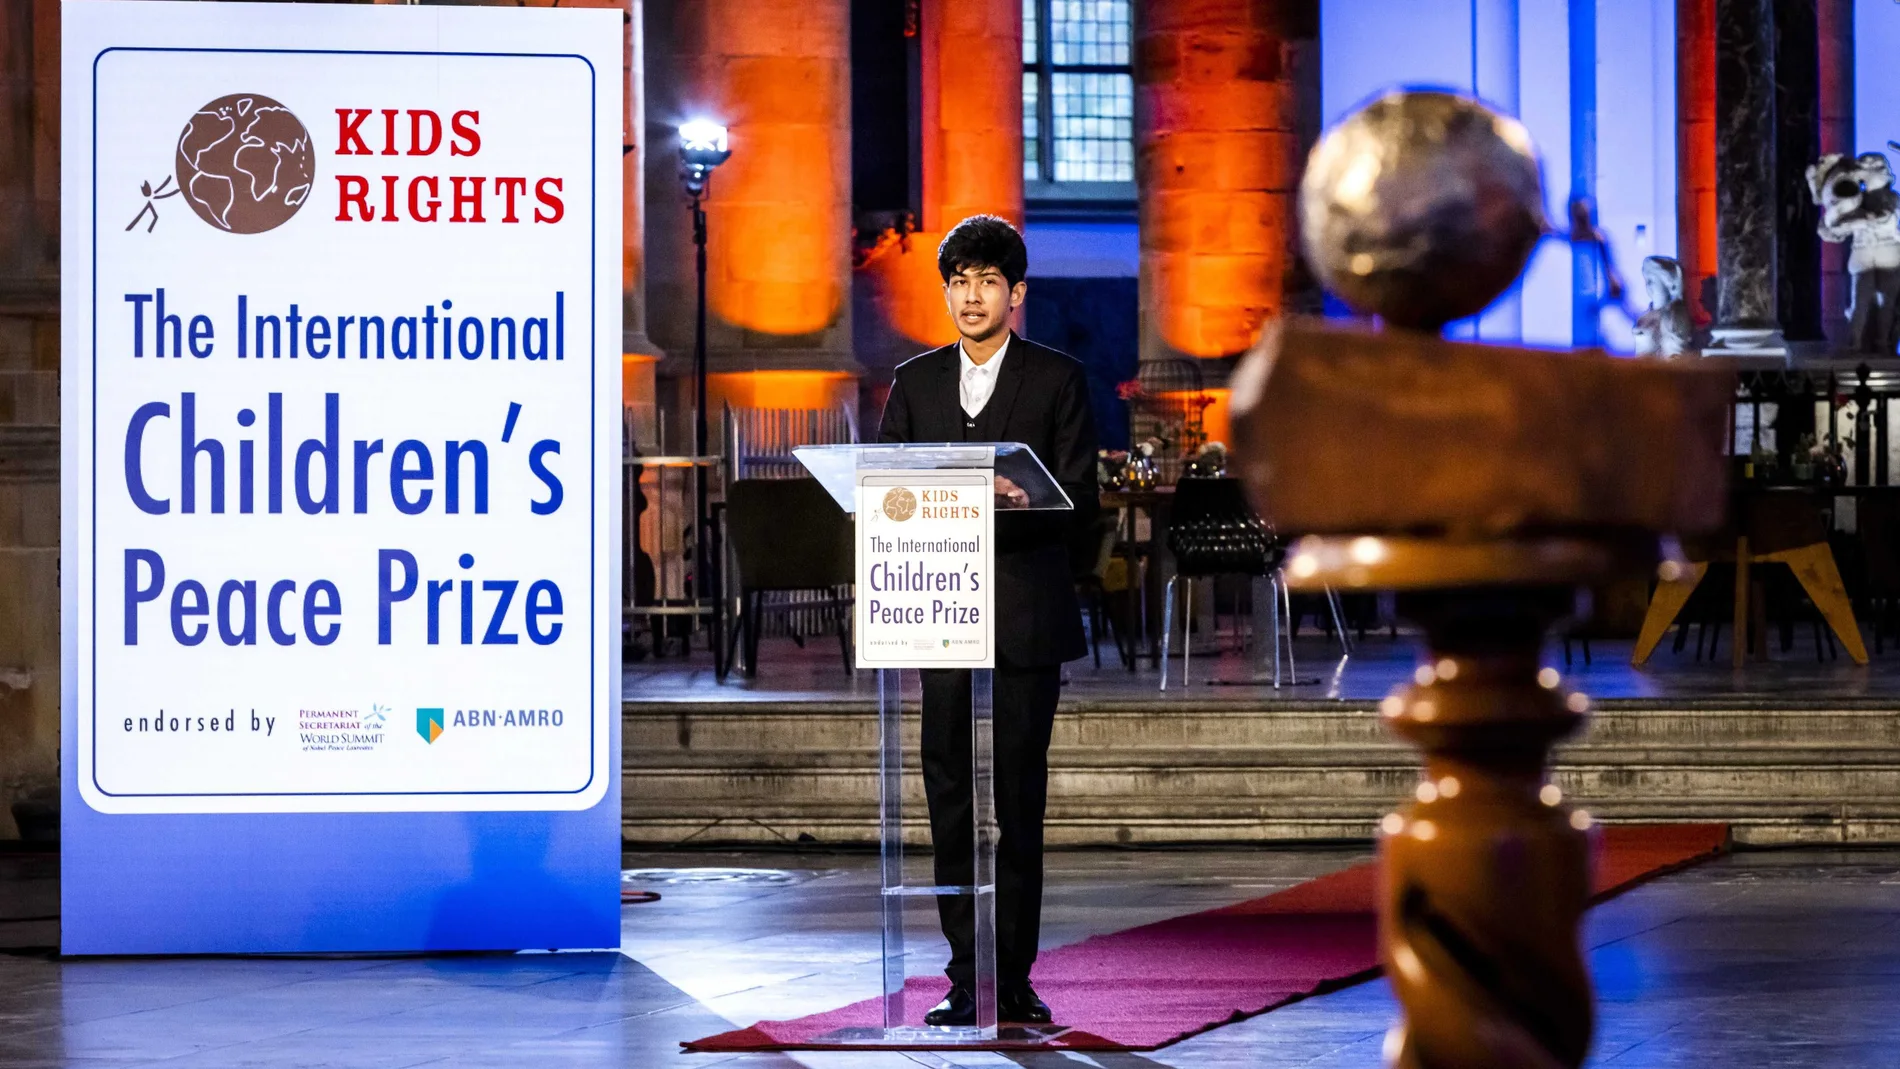 -FOTODELDÍA- EA5453. LA HAYA (HOLANDA), 13/11/2020.- El joven bangladesí Sadat Rahman, de 17 años, recibe el Premio Internacional de la Paz Infantil 2020 por sus esfuerzos contra el ciber acoso, en una ceremonia celebrada en La Haya (Holanda), este viernes. EFE/ Remko De Waal